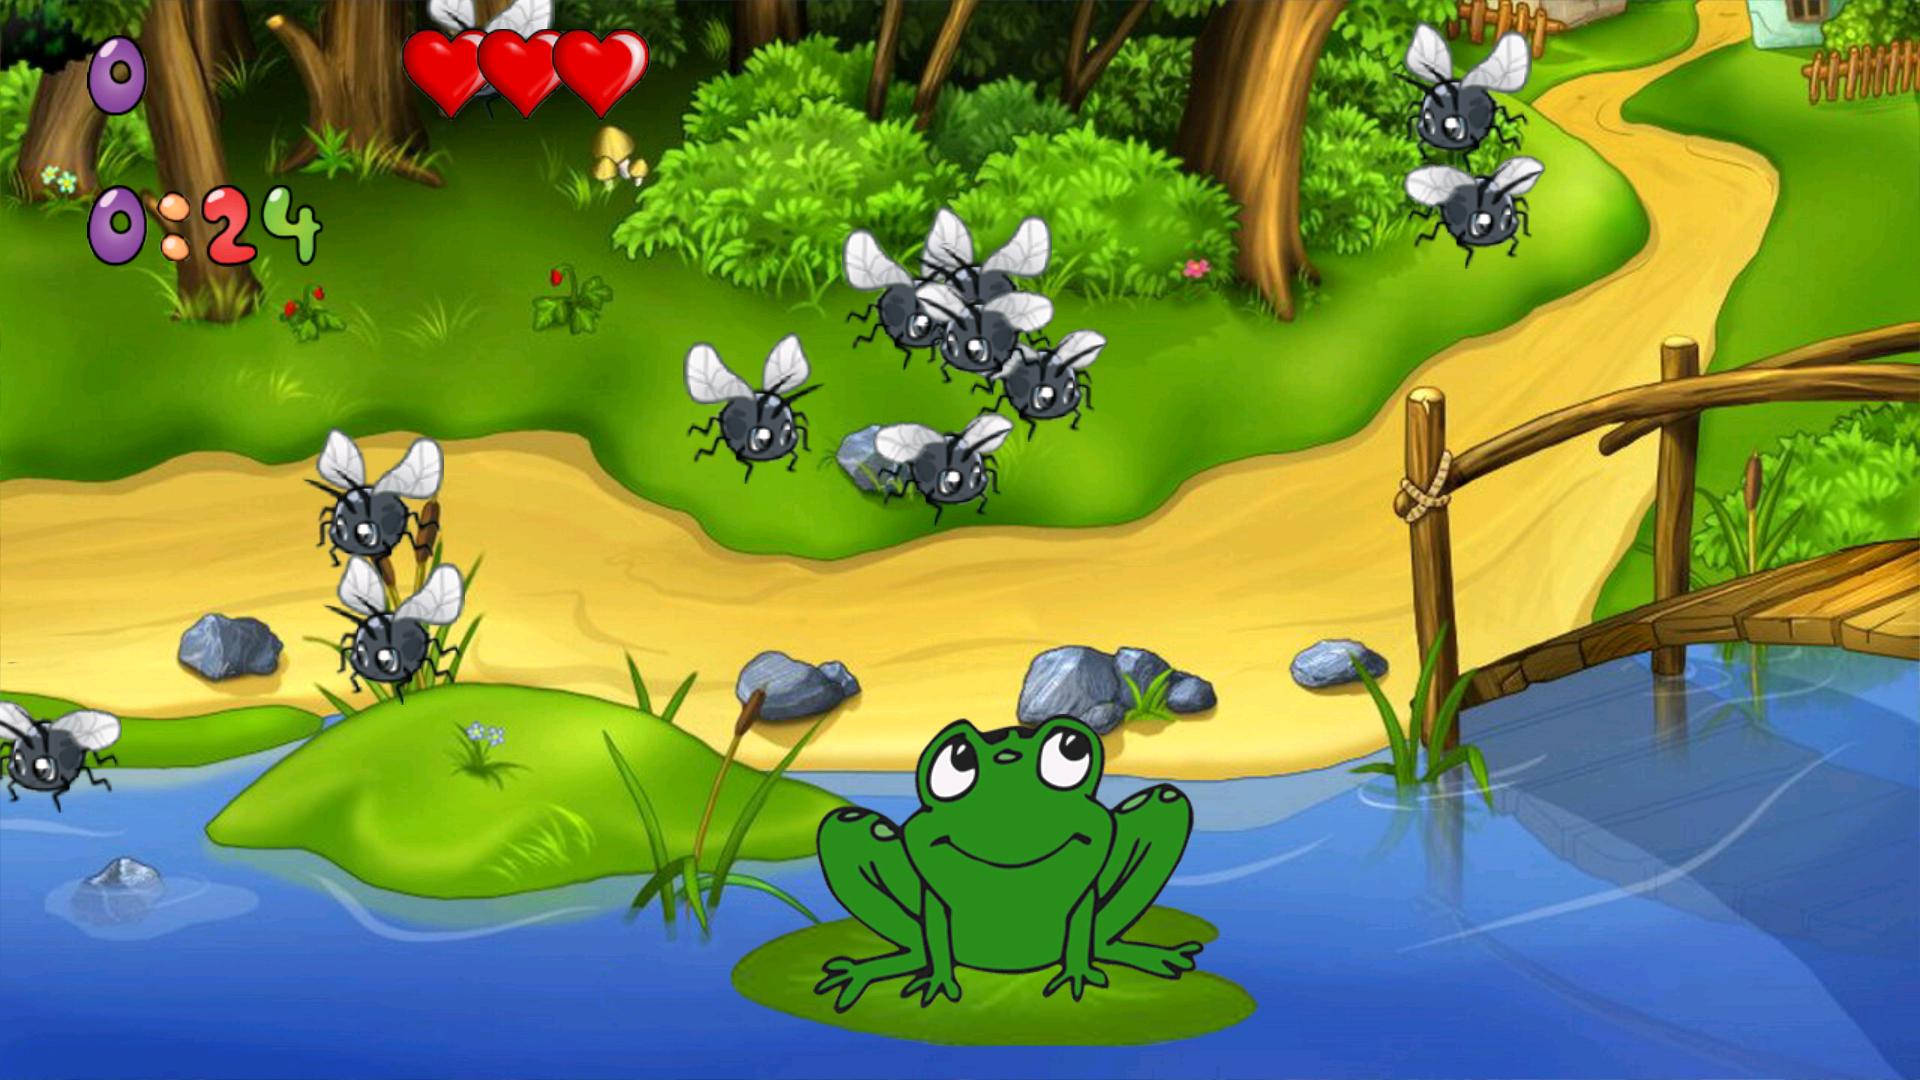 Игра лягушки демо. Игра лягушки на болоте. Зеленая лягушка игра. Детские компьютерные игры. Компьютерная игра про лягушку.